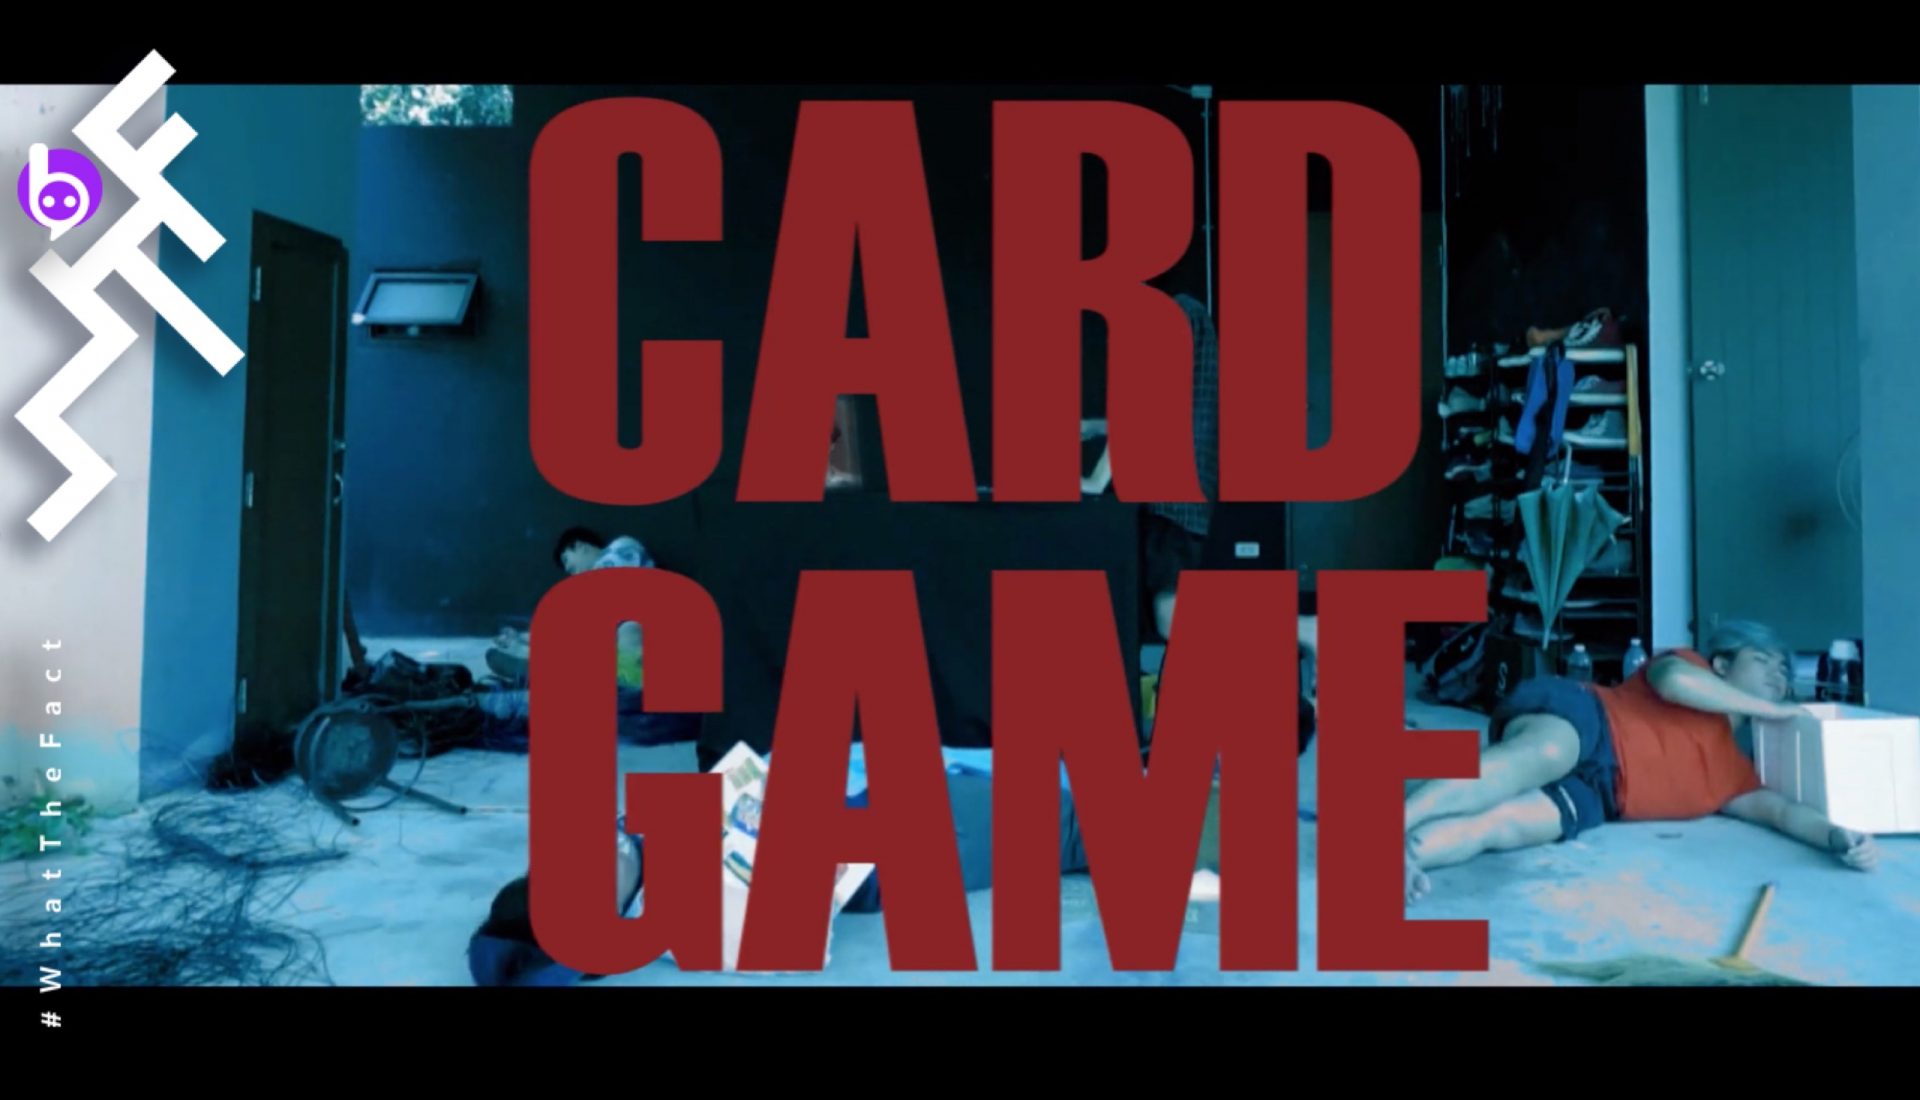 เล่นเกมไพ่ในห้วงทรงจำ “Card Game” ซิงเกิ้ลอันล่องลอยและหลอนลึกจาก The Vuniyerse